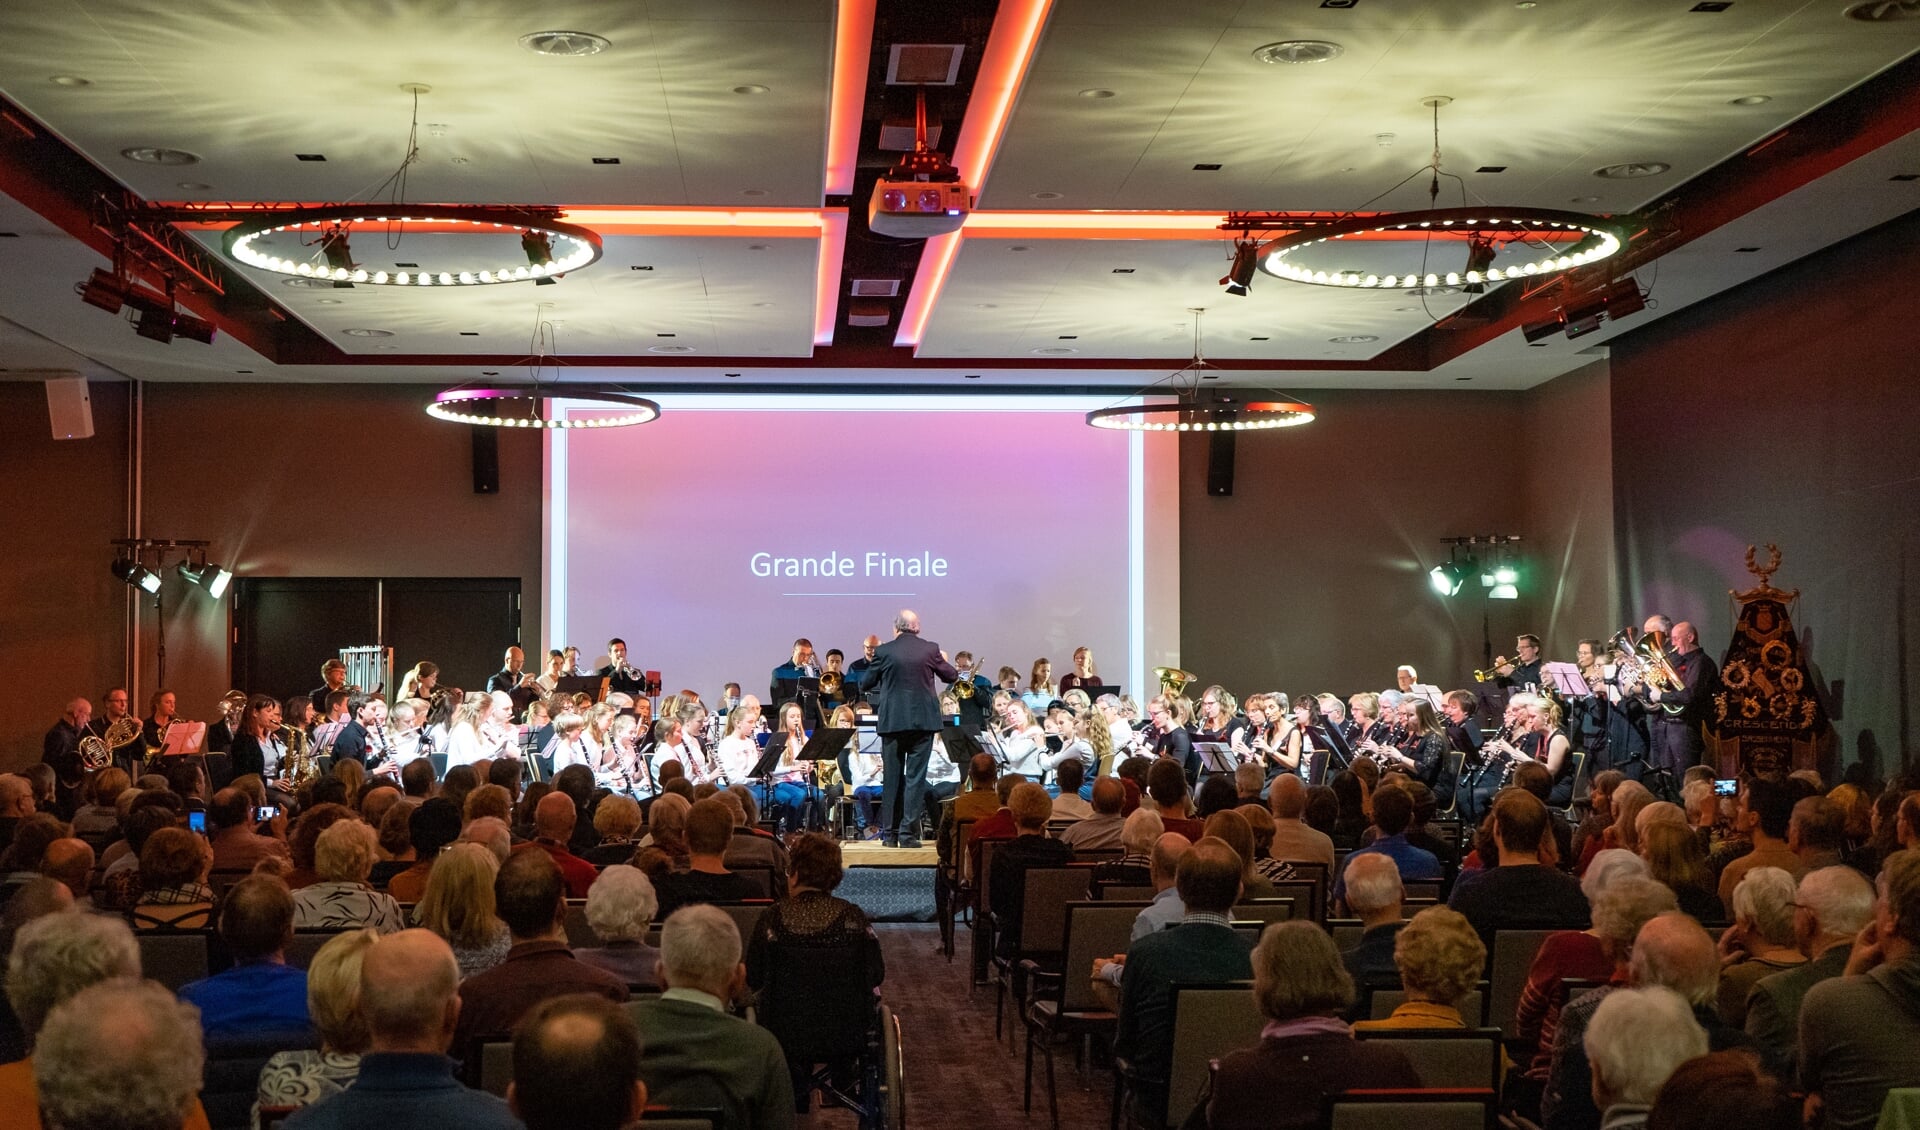 Alle orkesten van Crescendo spelen het speciaal gecomponeerde jubileumstuk High 5 for 115 van Michel de Haas tijdens het jubileumconcert op 23 november 2019.